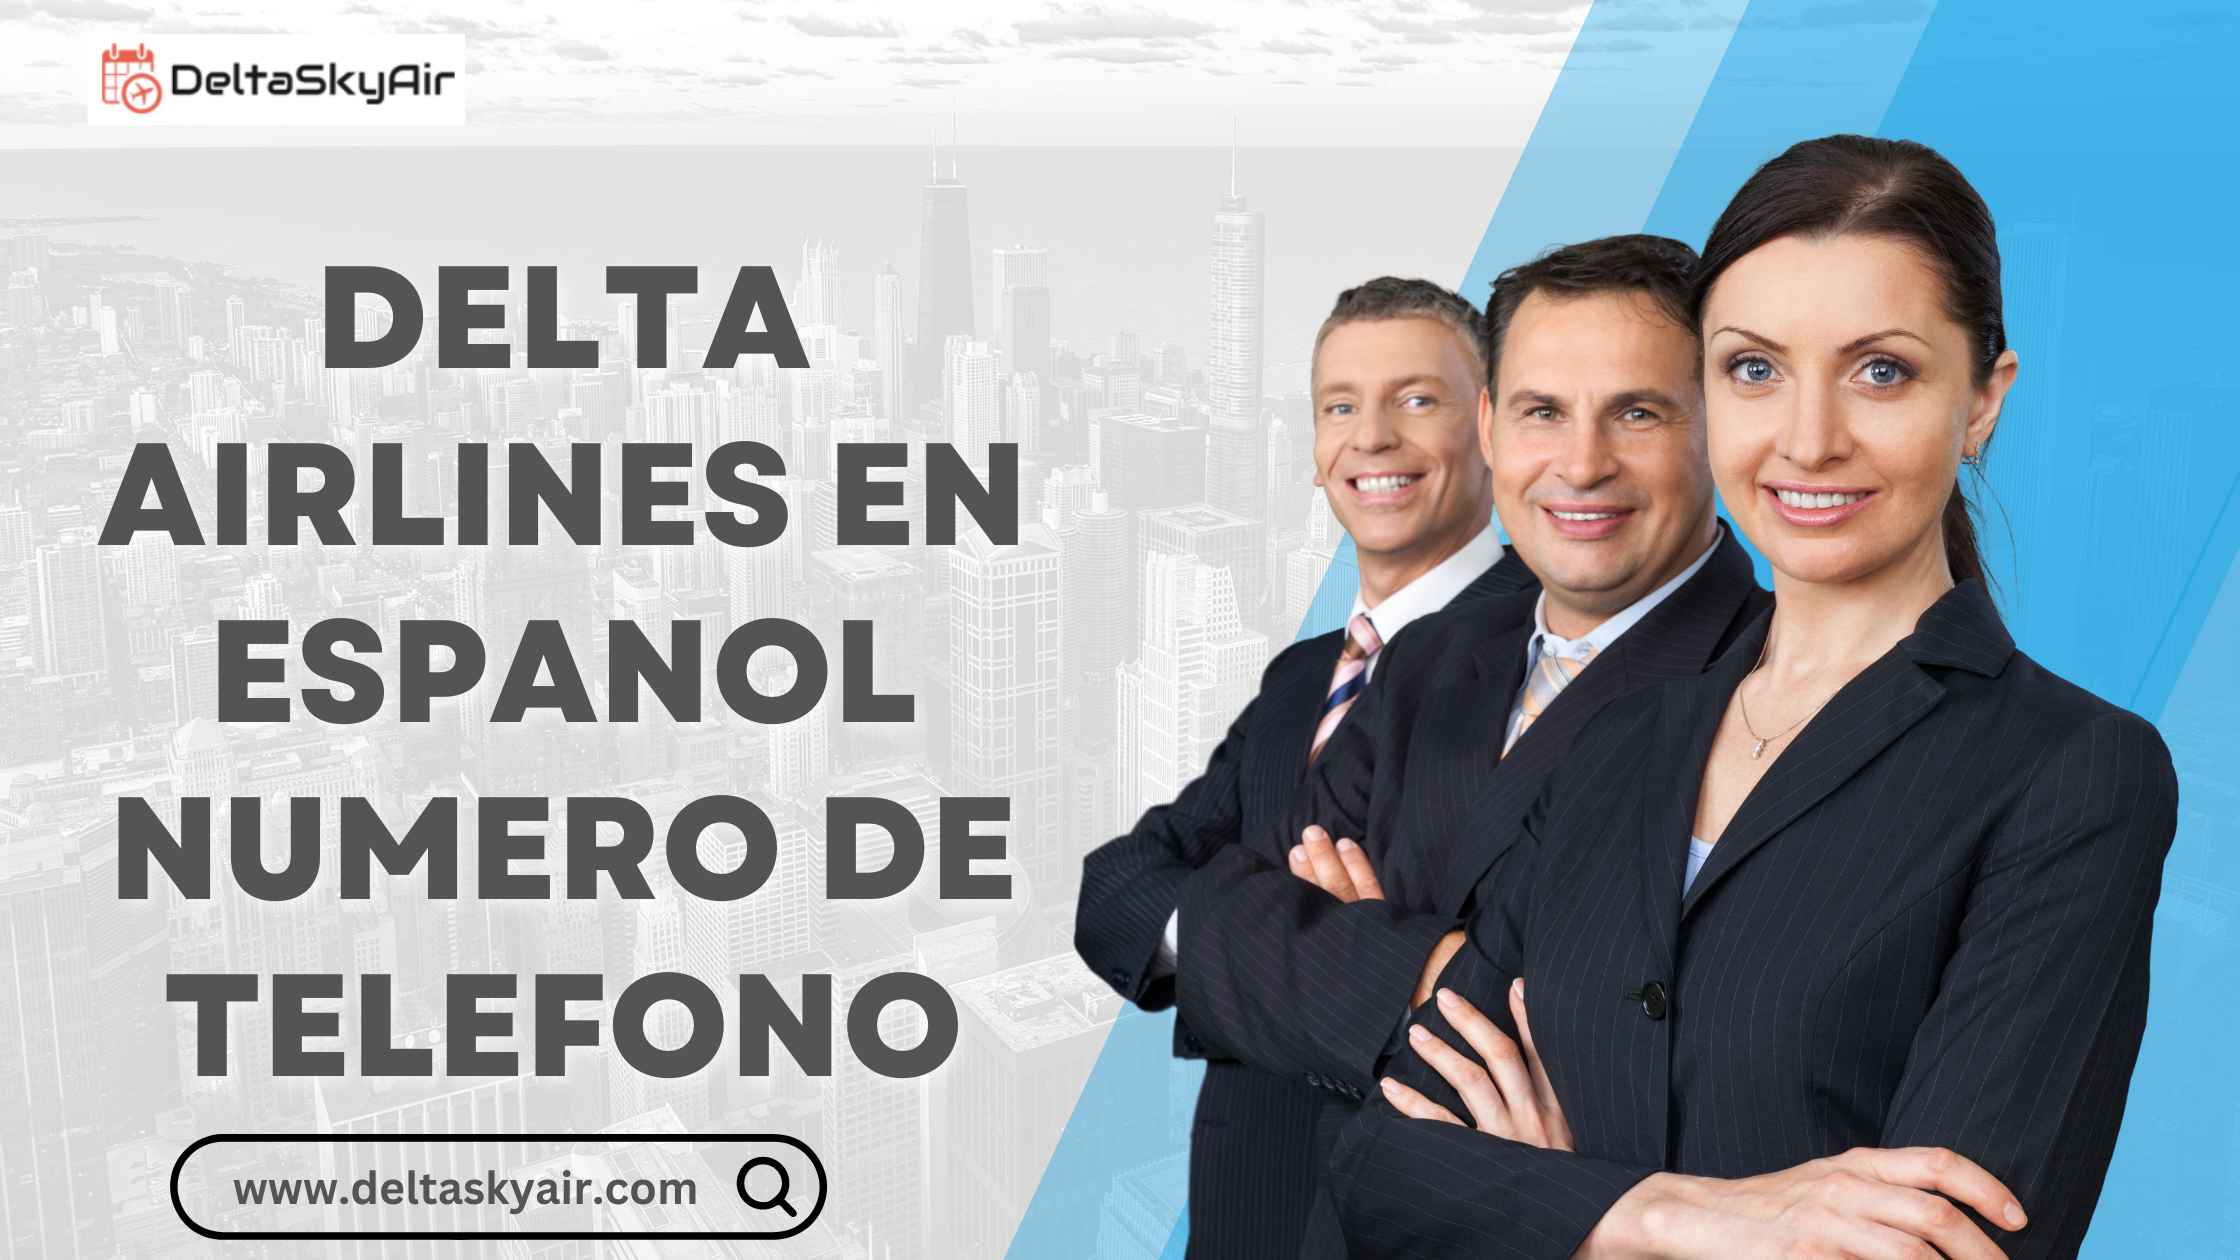 Delta Airlines en Espanol Numero de Telefono